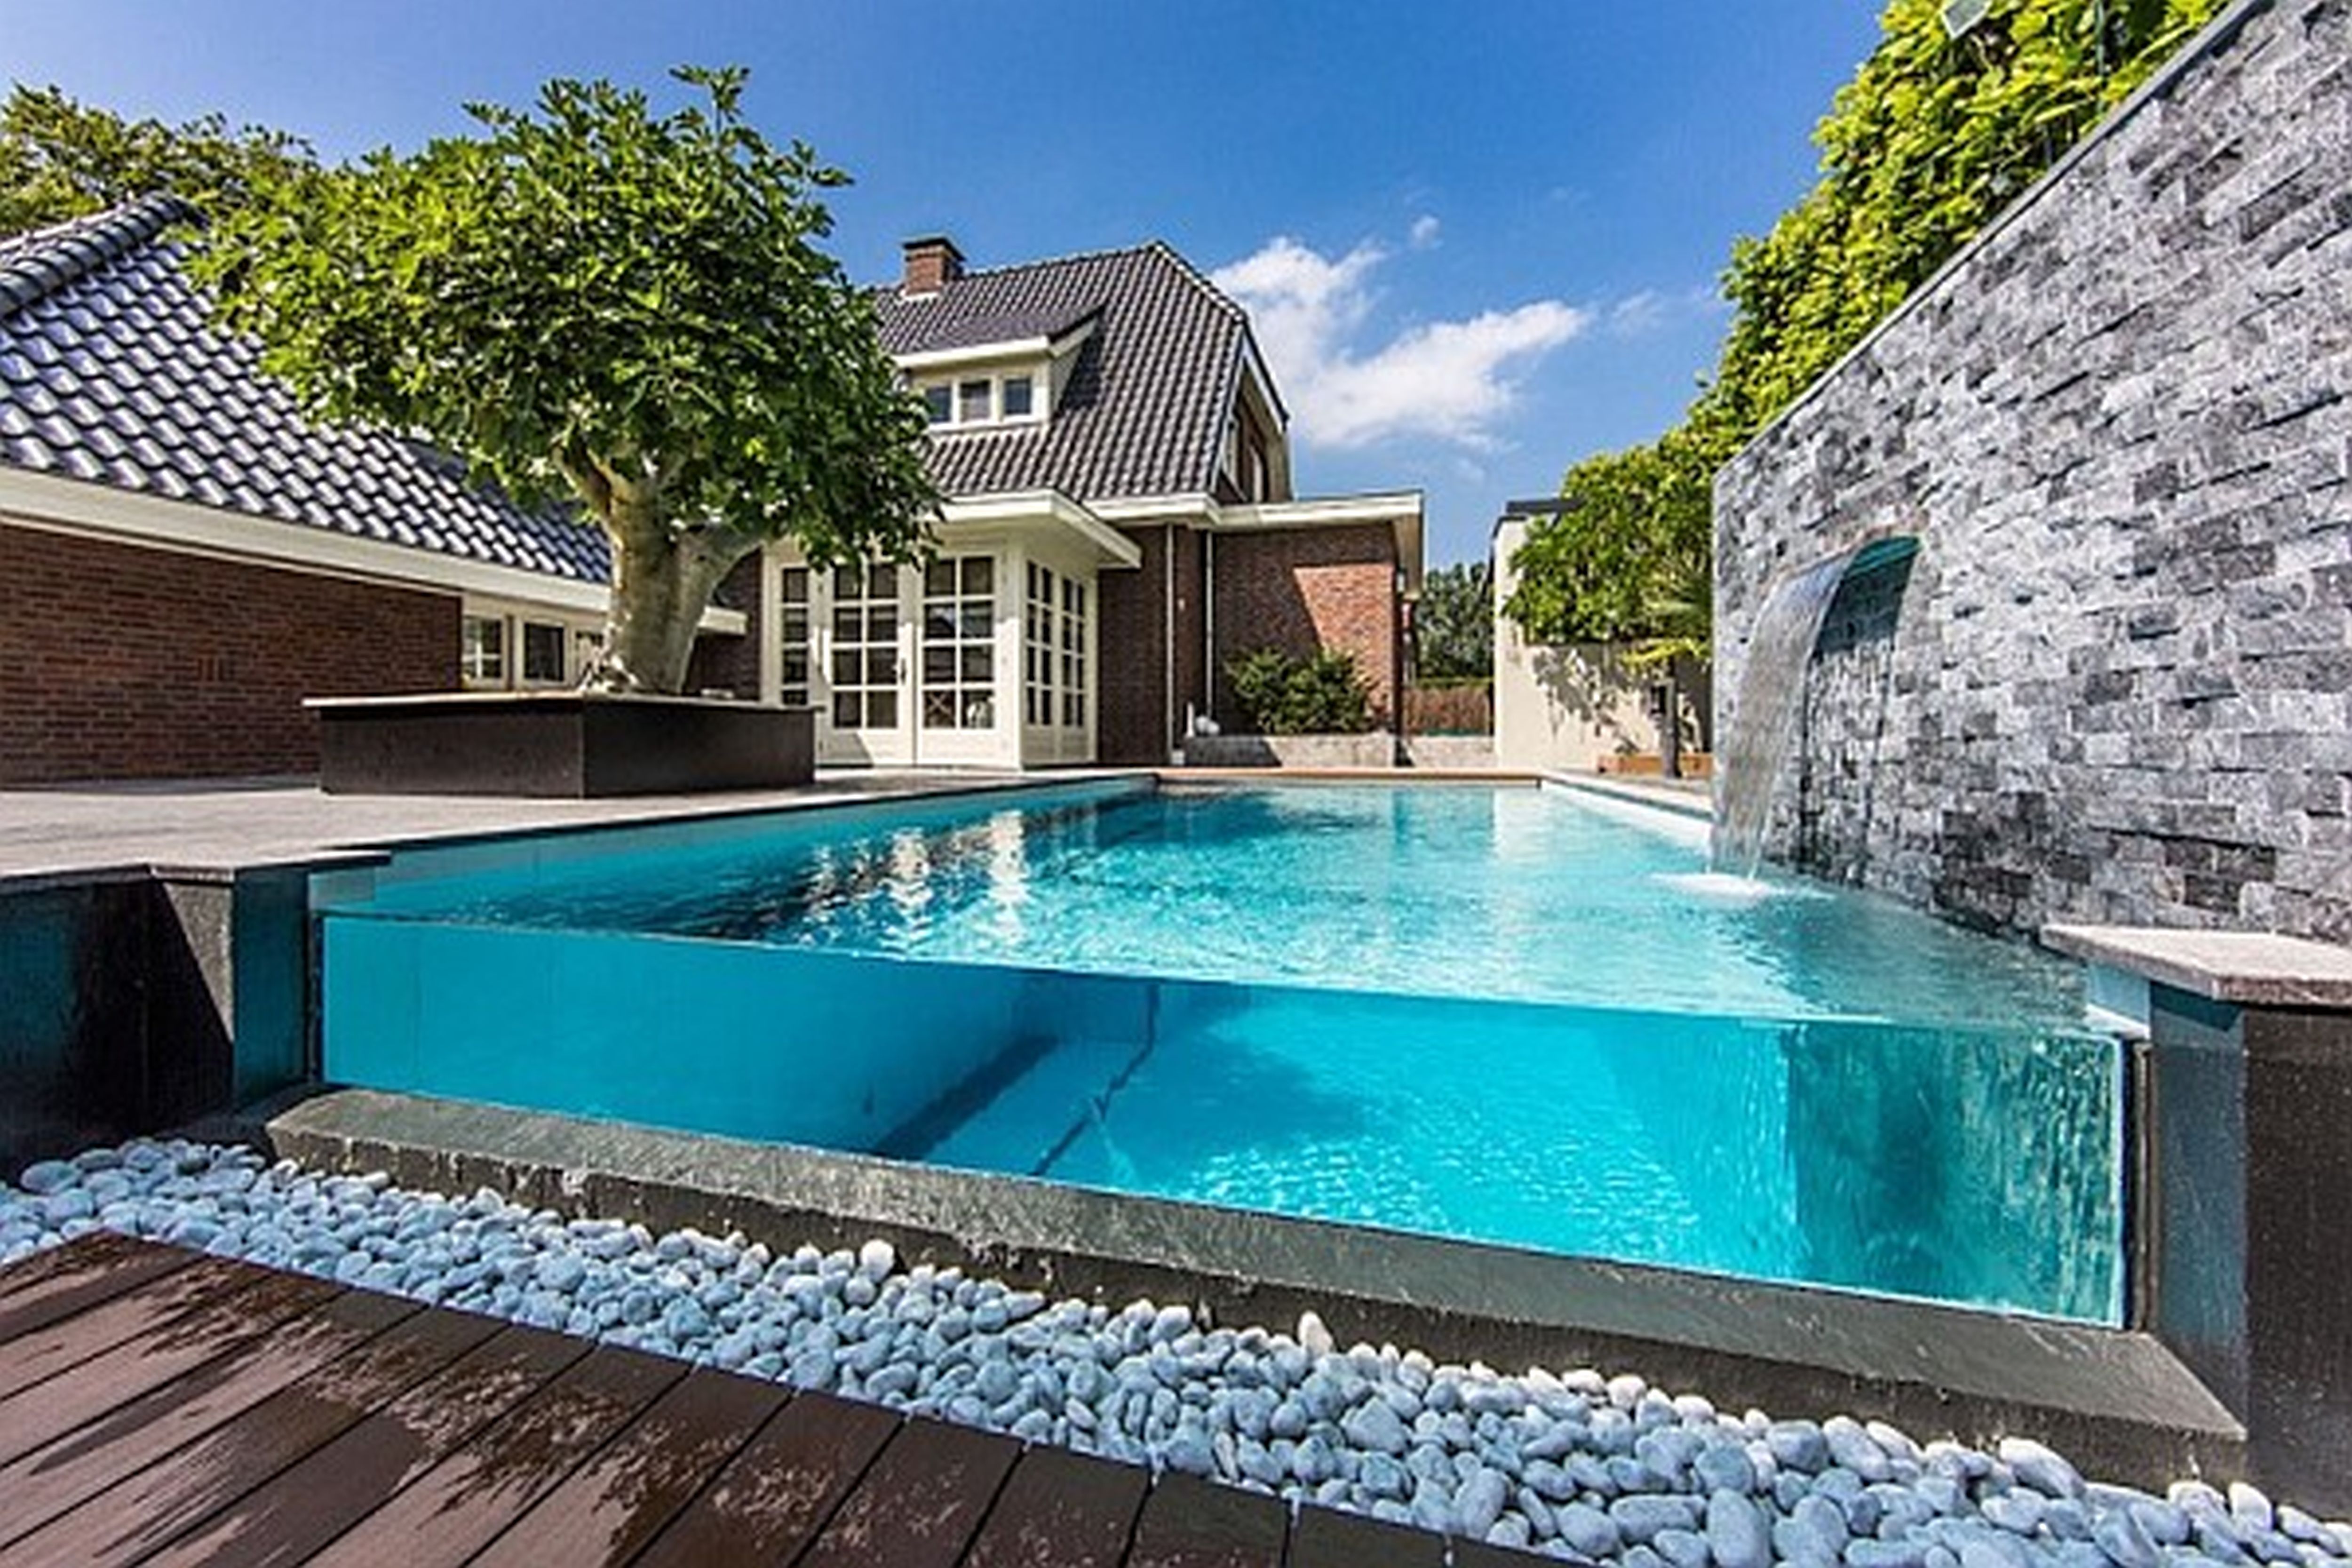 Rplant pool. Красивый бассейн. Красивый бассейн в доме. Дизайнерский дом с бассейном. Бассейн во дворе.